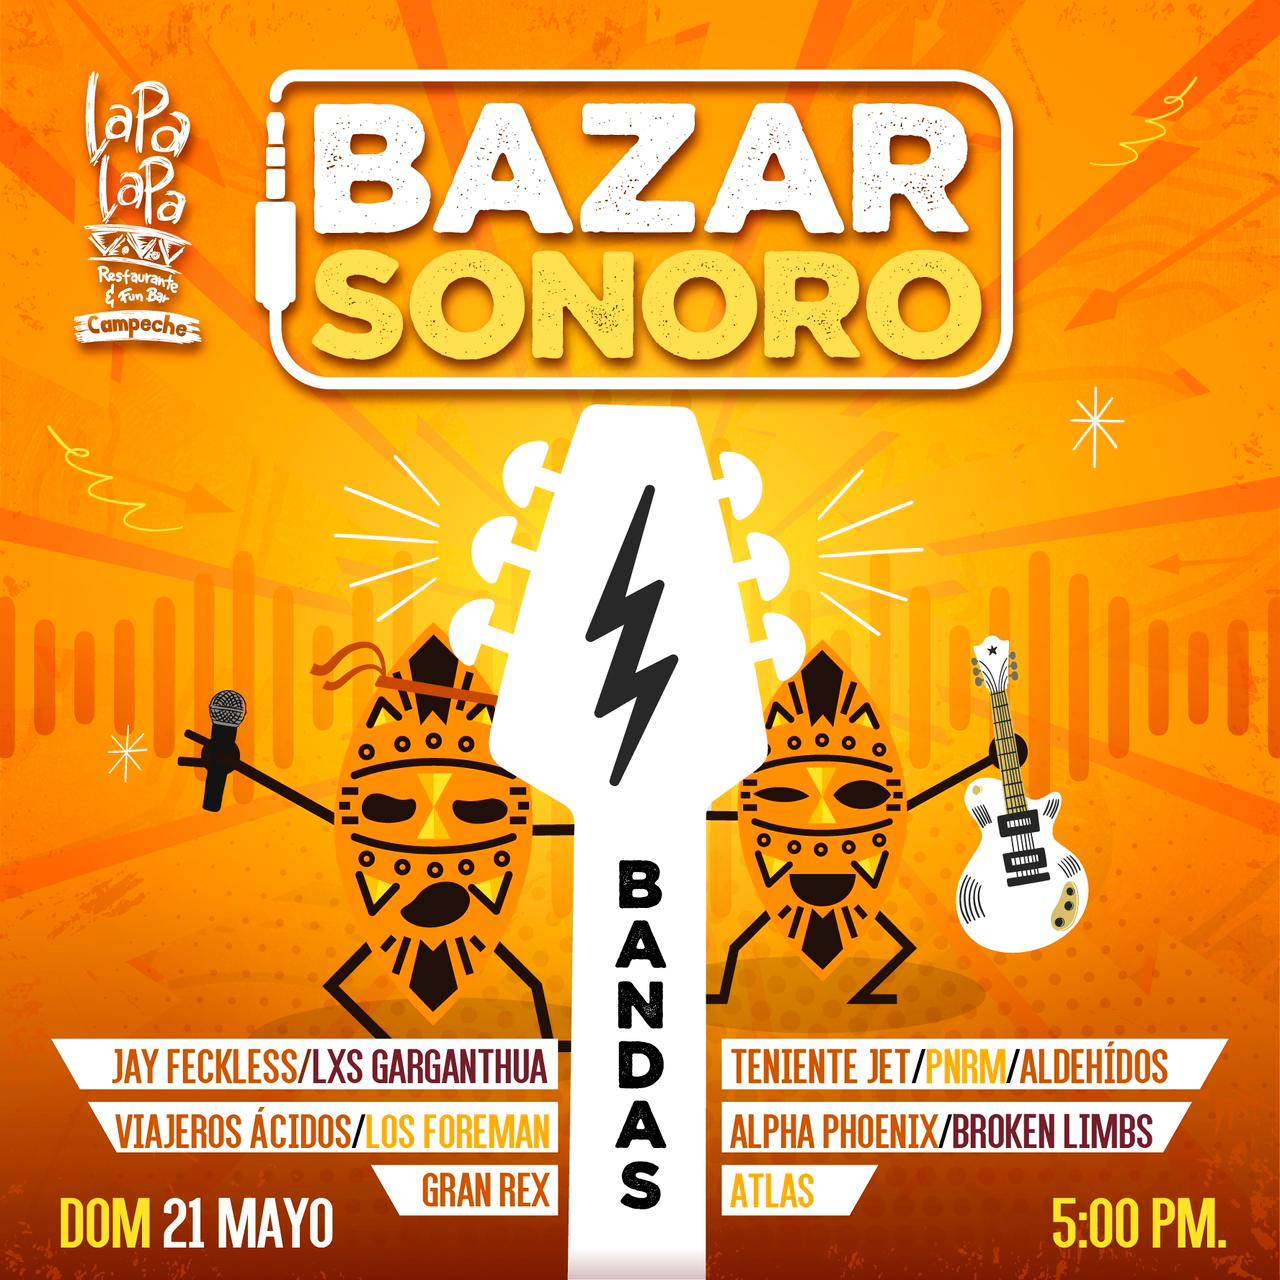  Regresa el Bazar Sonoro en Lapa Lapa Campeche